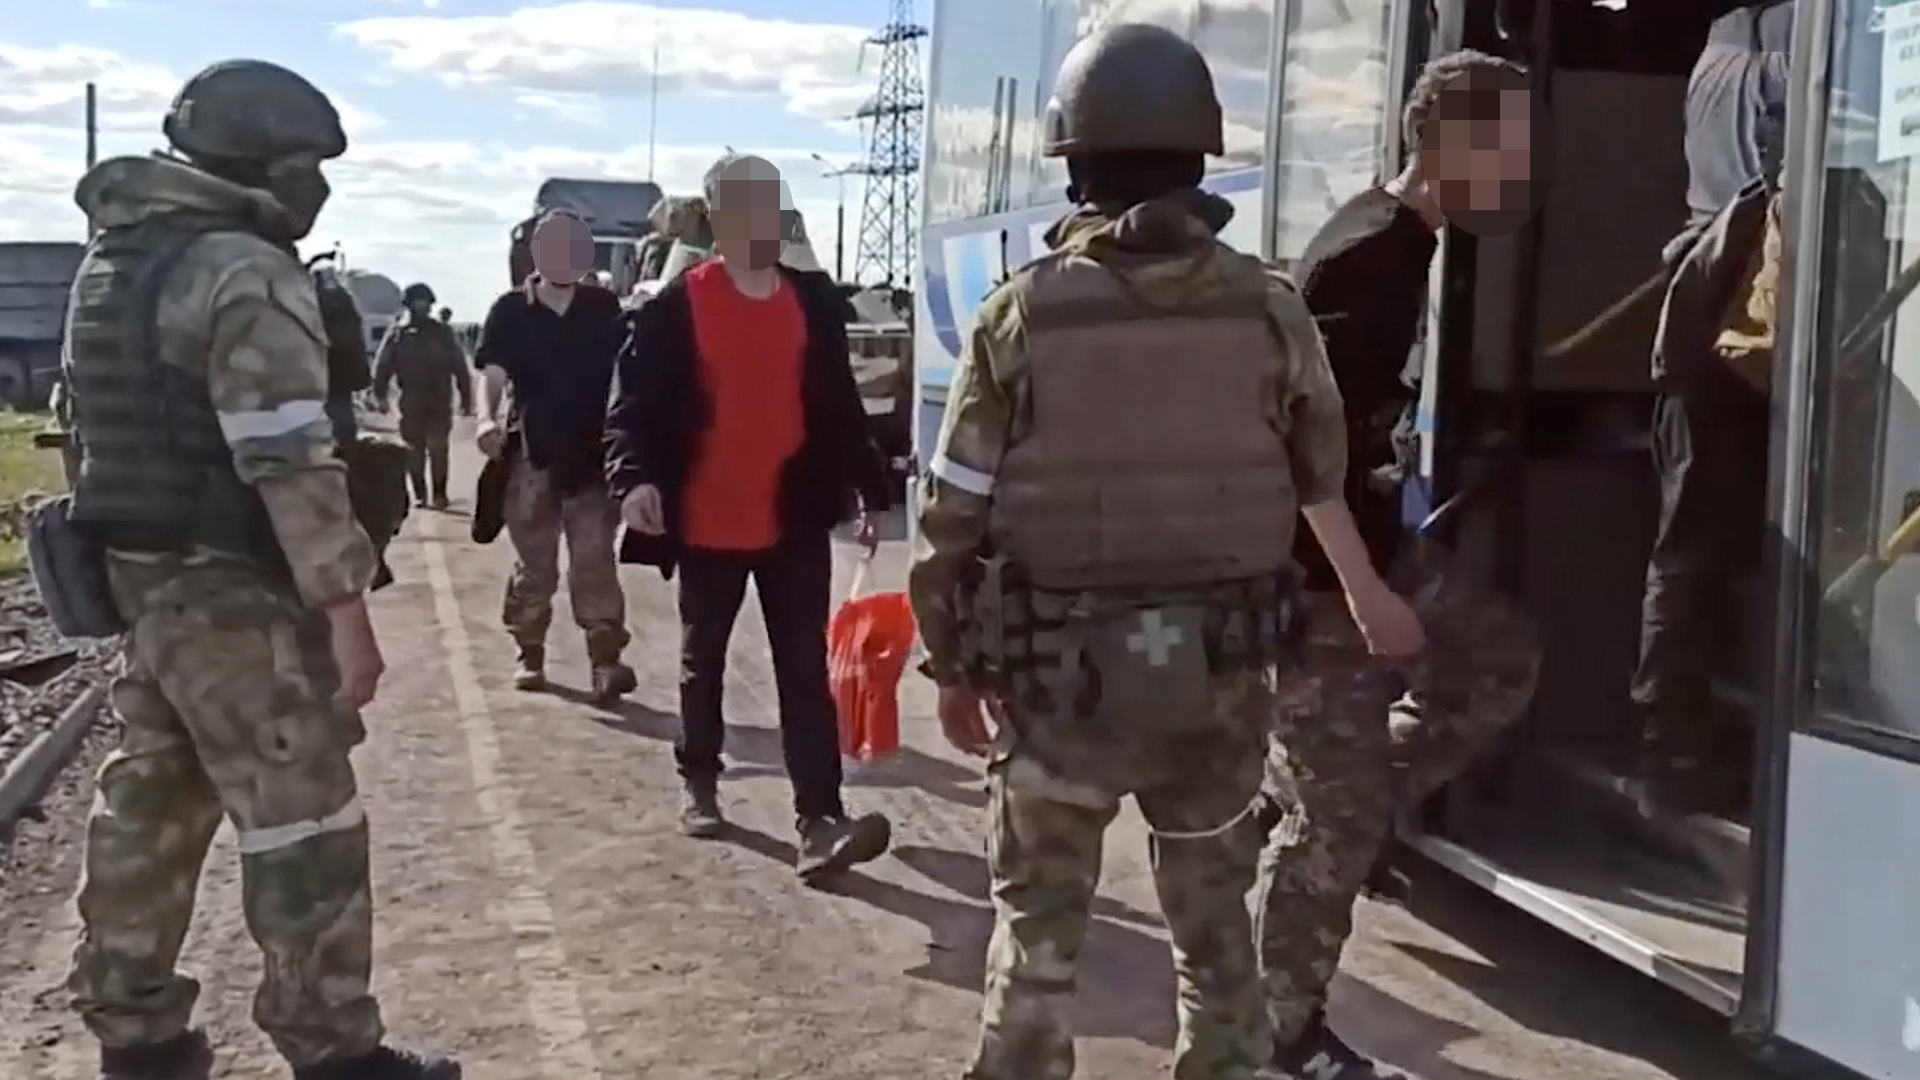 Bewacht von russischen Soldaten betreten ukrainische Soldaten einen Bus in Asowstal.